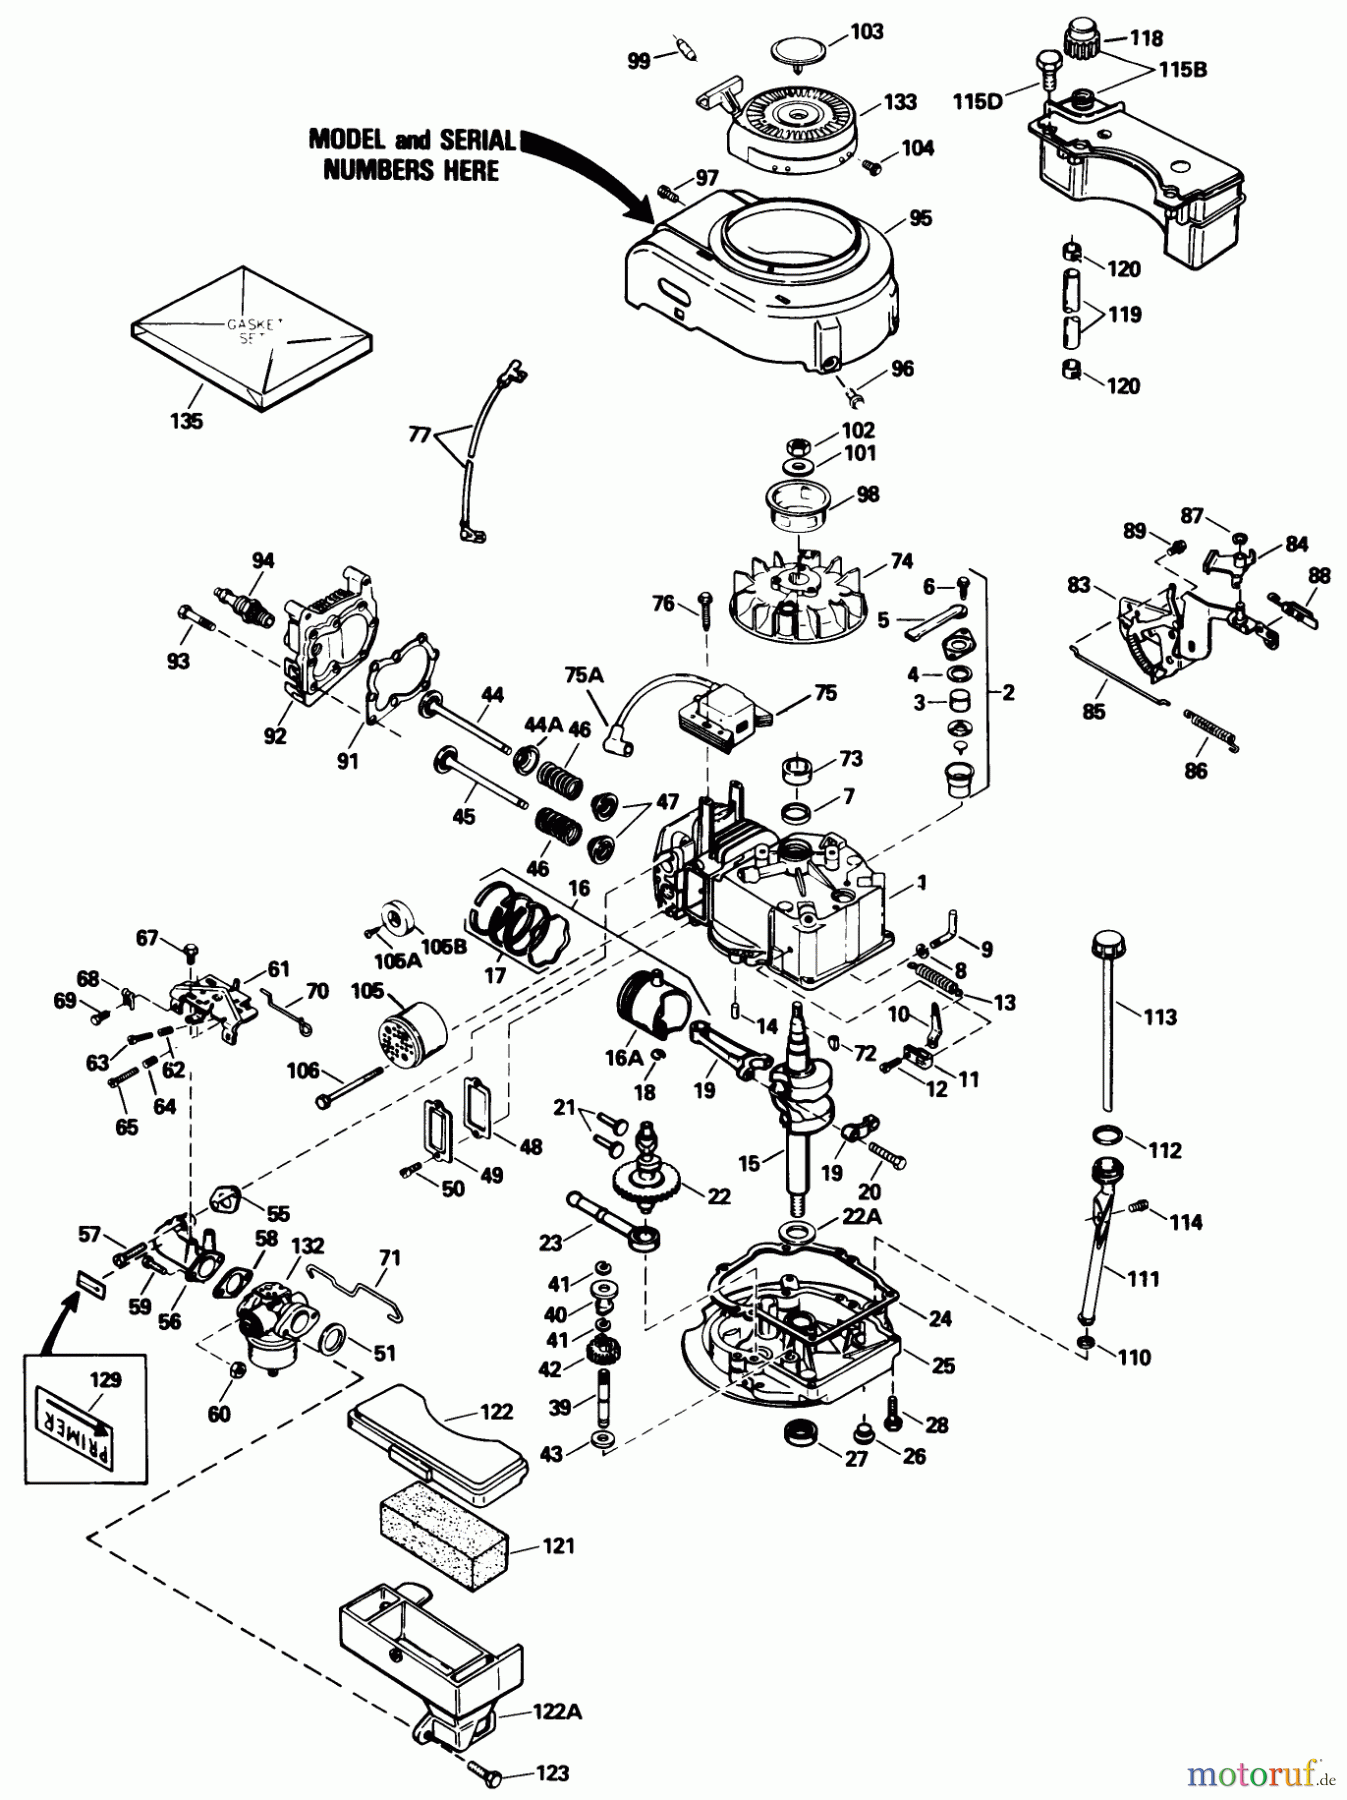  Toro Neu Mowers, Walk-Behind Seite 1 16212W - Toro Lawnmower, 1990 (0000001-0999999) ENGINE TECUMSEH MODEL NO. TVS100-44021B